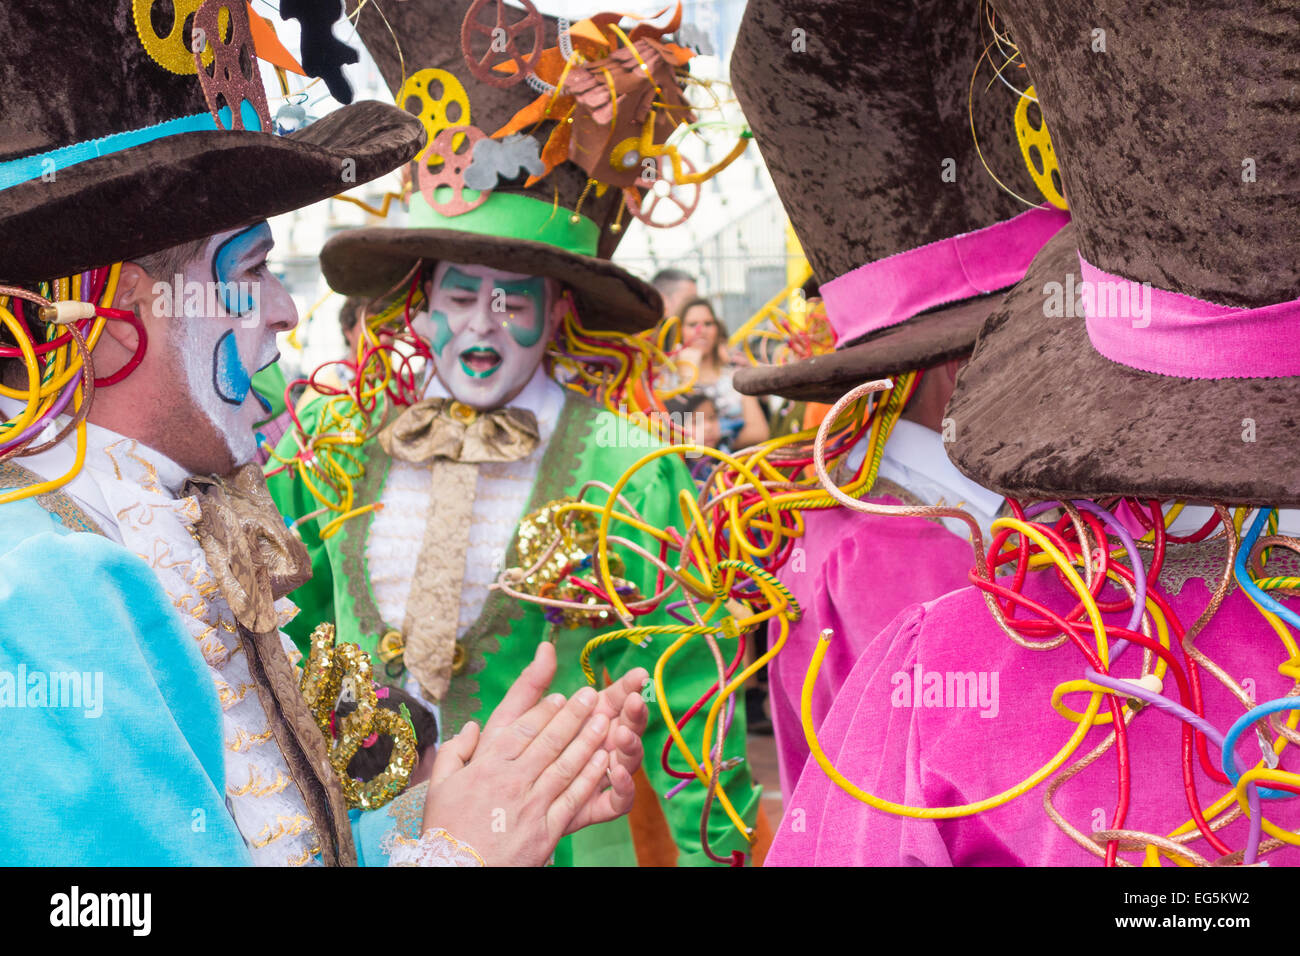 Las Palmas de Gran Canaria, Isole Canarie, Spagna. Il 17 gennaio, 2015, coloratissimi costumi a Las Palmas carnevale a Gran Canaria come il mese lungo Carnevale entra nella sua terza settimana. Credito: ALANDAWSONPHOTOGRAPHY/Alamy Live News Foto Stock